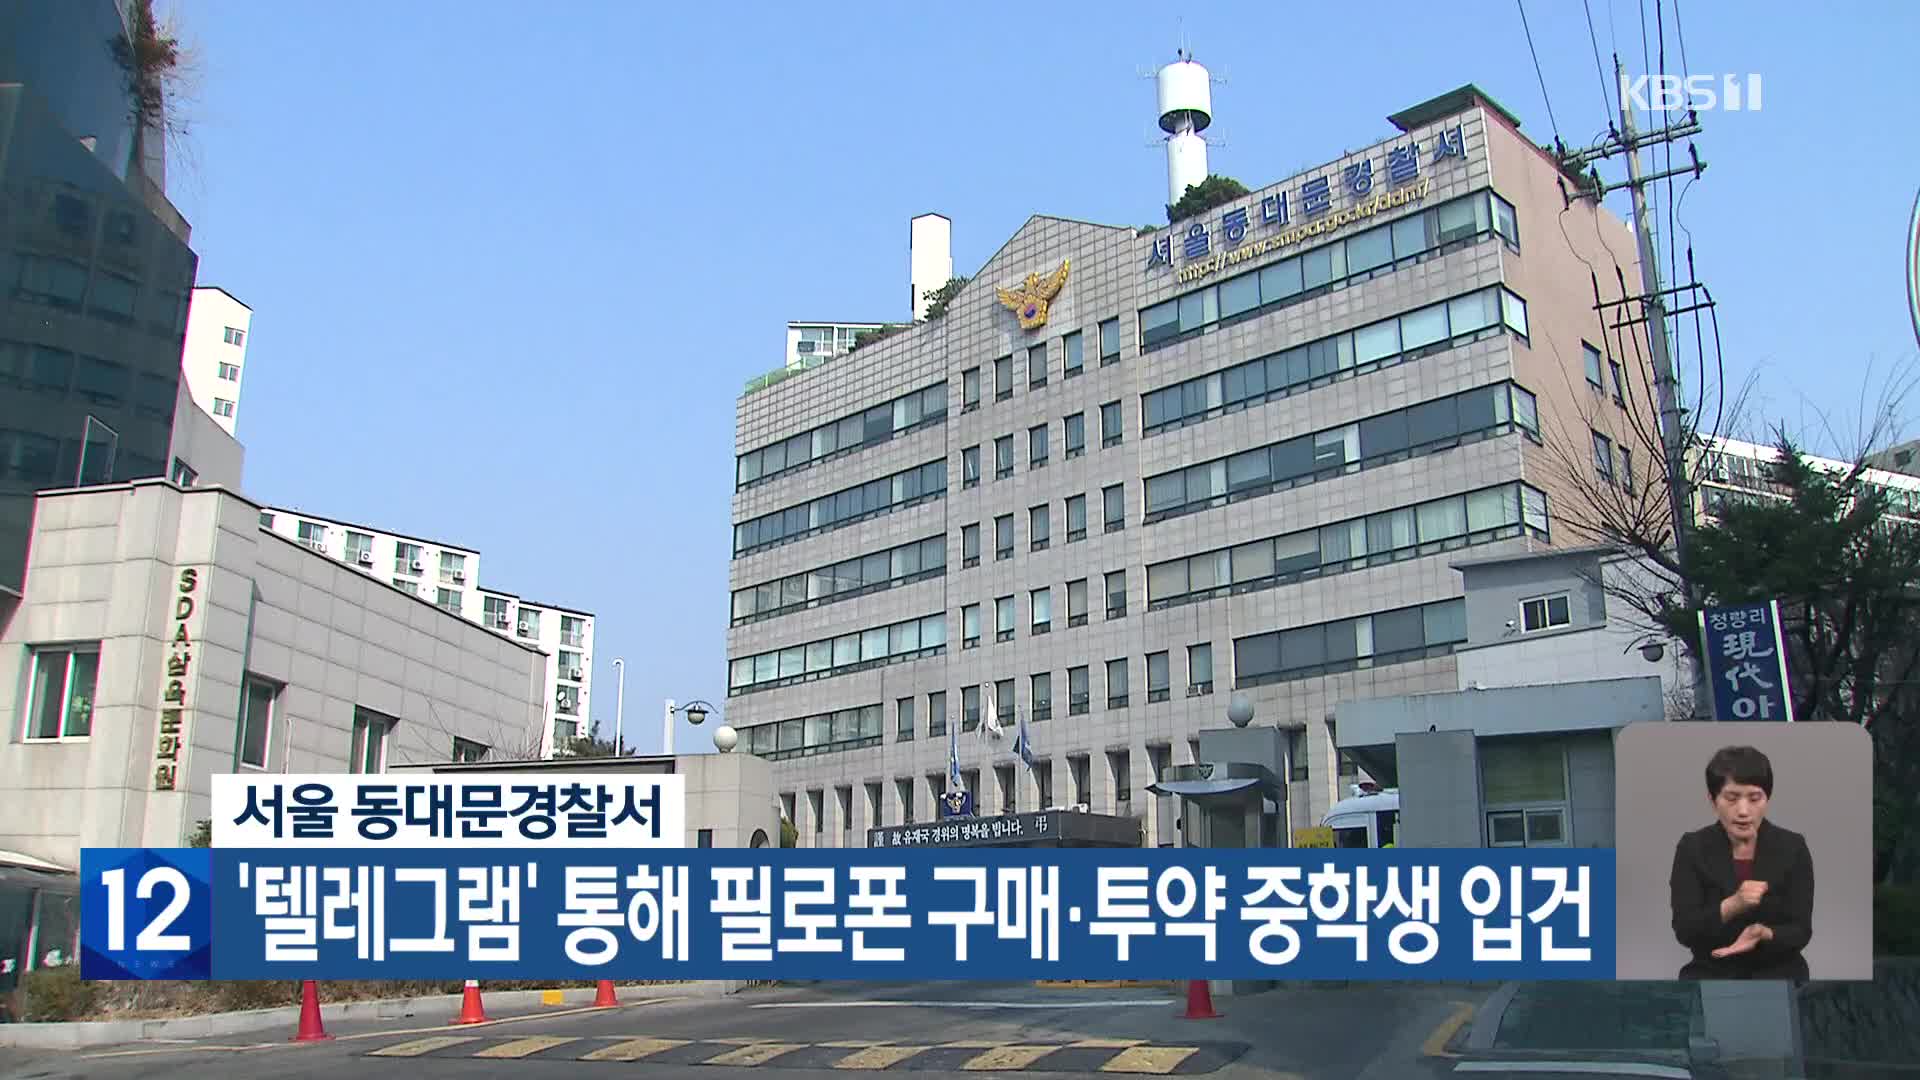 서울 동대문경찰서, ‘텔레그램’ 통해 필로폰 구매·투약 중학생 입건